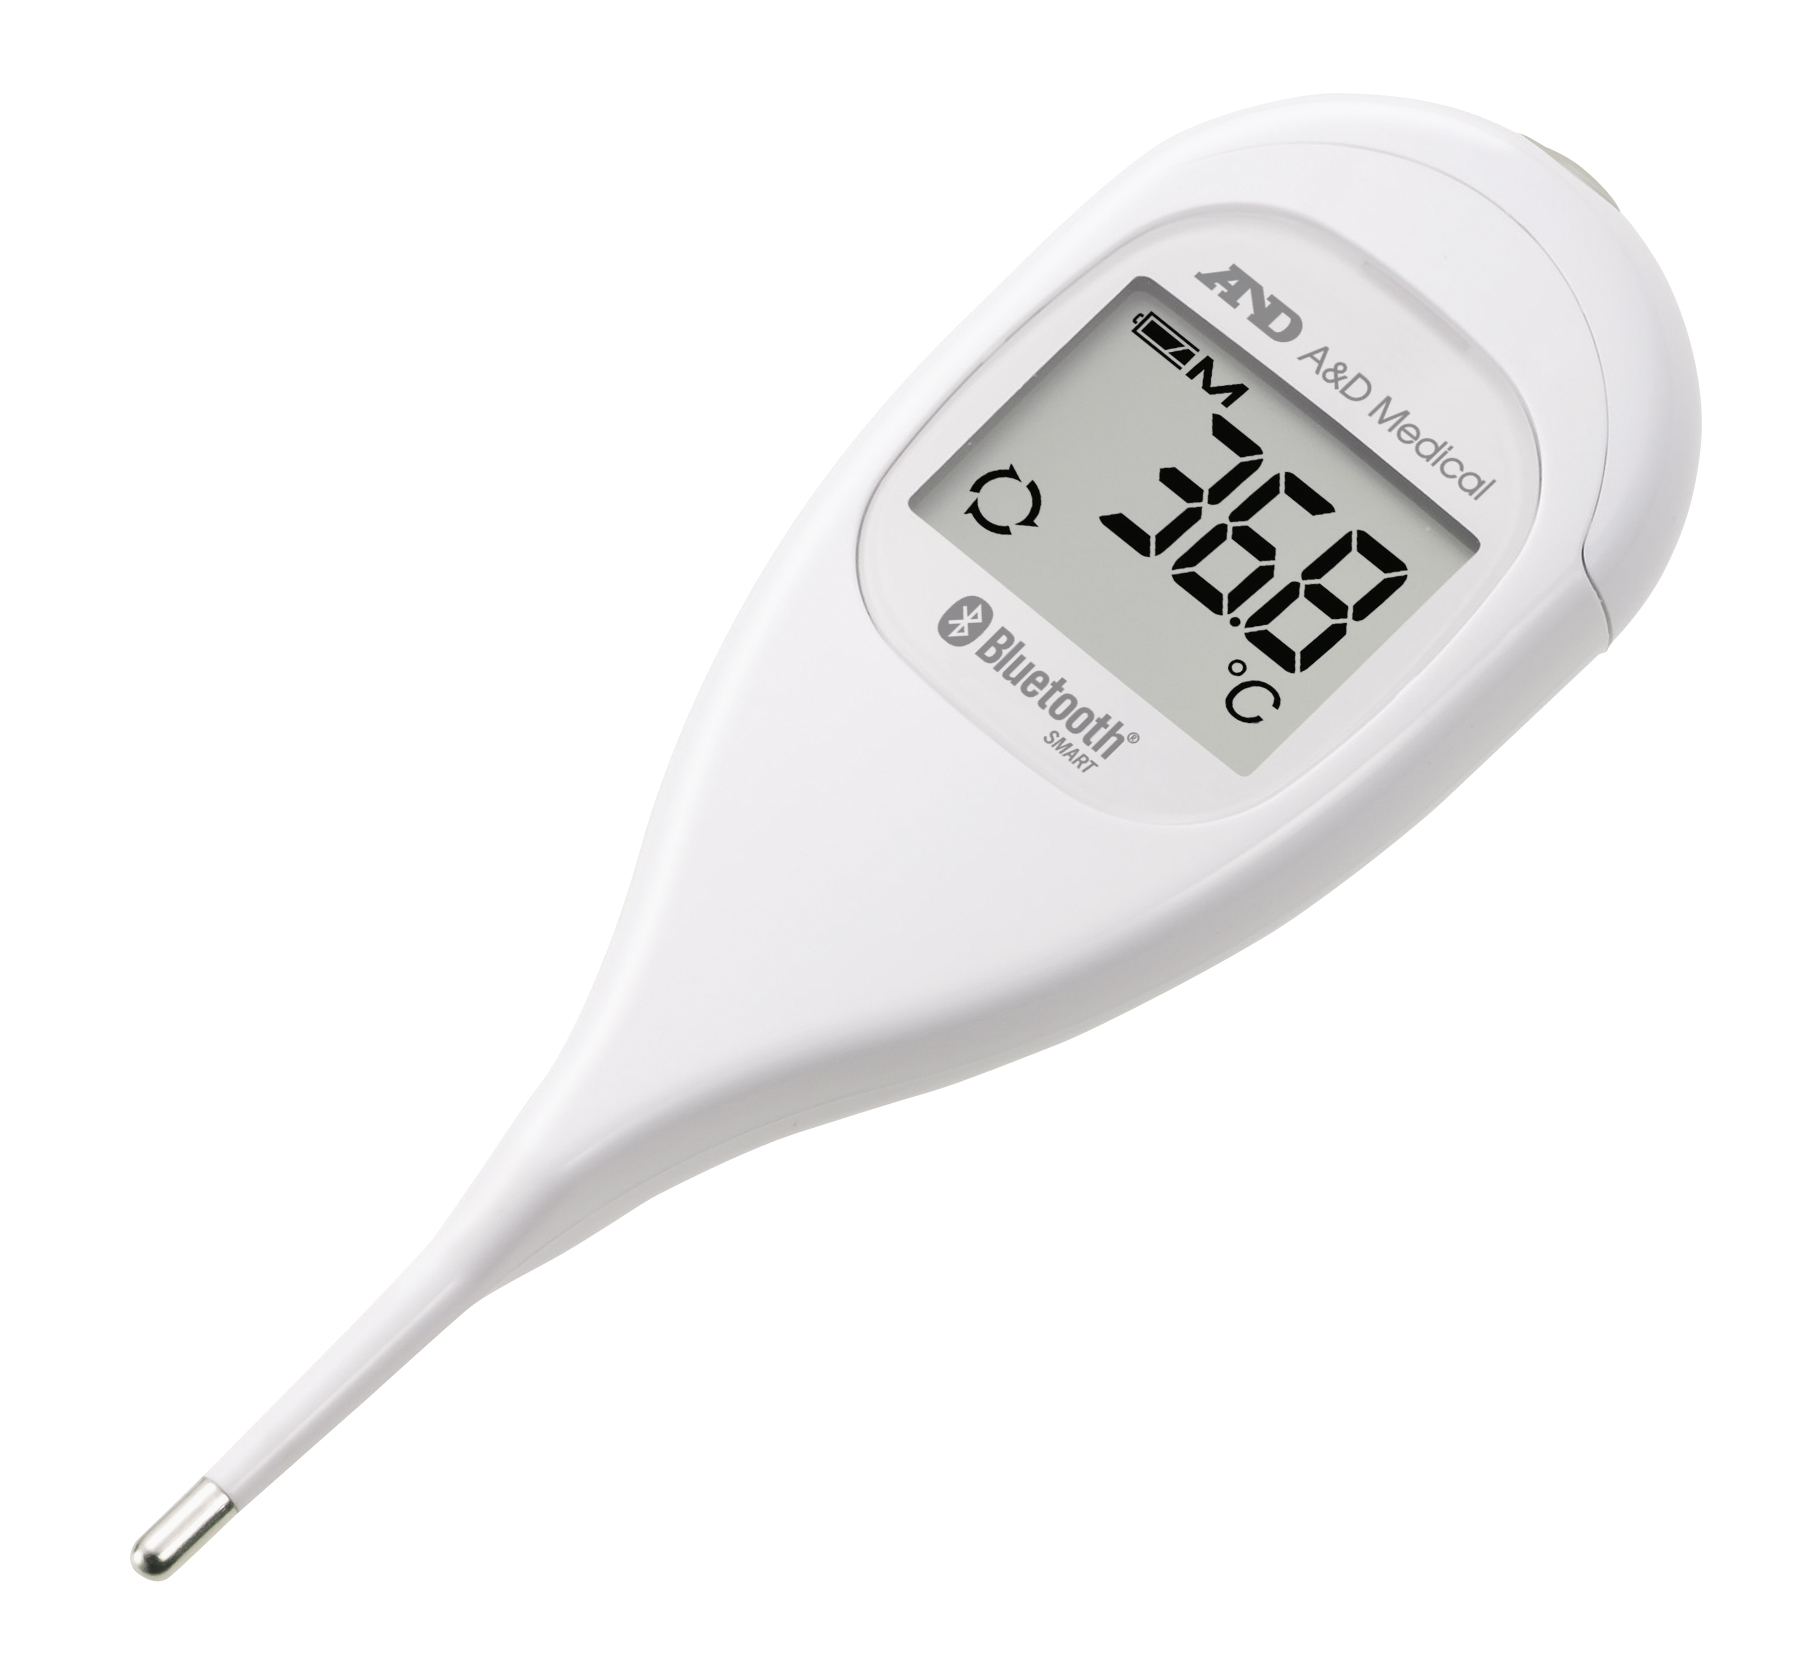 Купить термометр для измерения температуры. DT-625 термометр электронный. Термометр электронный a&d DT-623, белый [i01174]. Градусник анд ДТ 625. Гигрометр-термометр сем DT-625 481882.